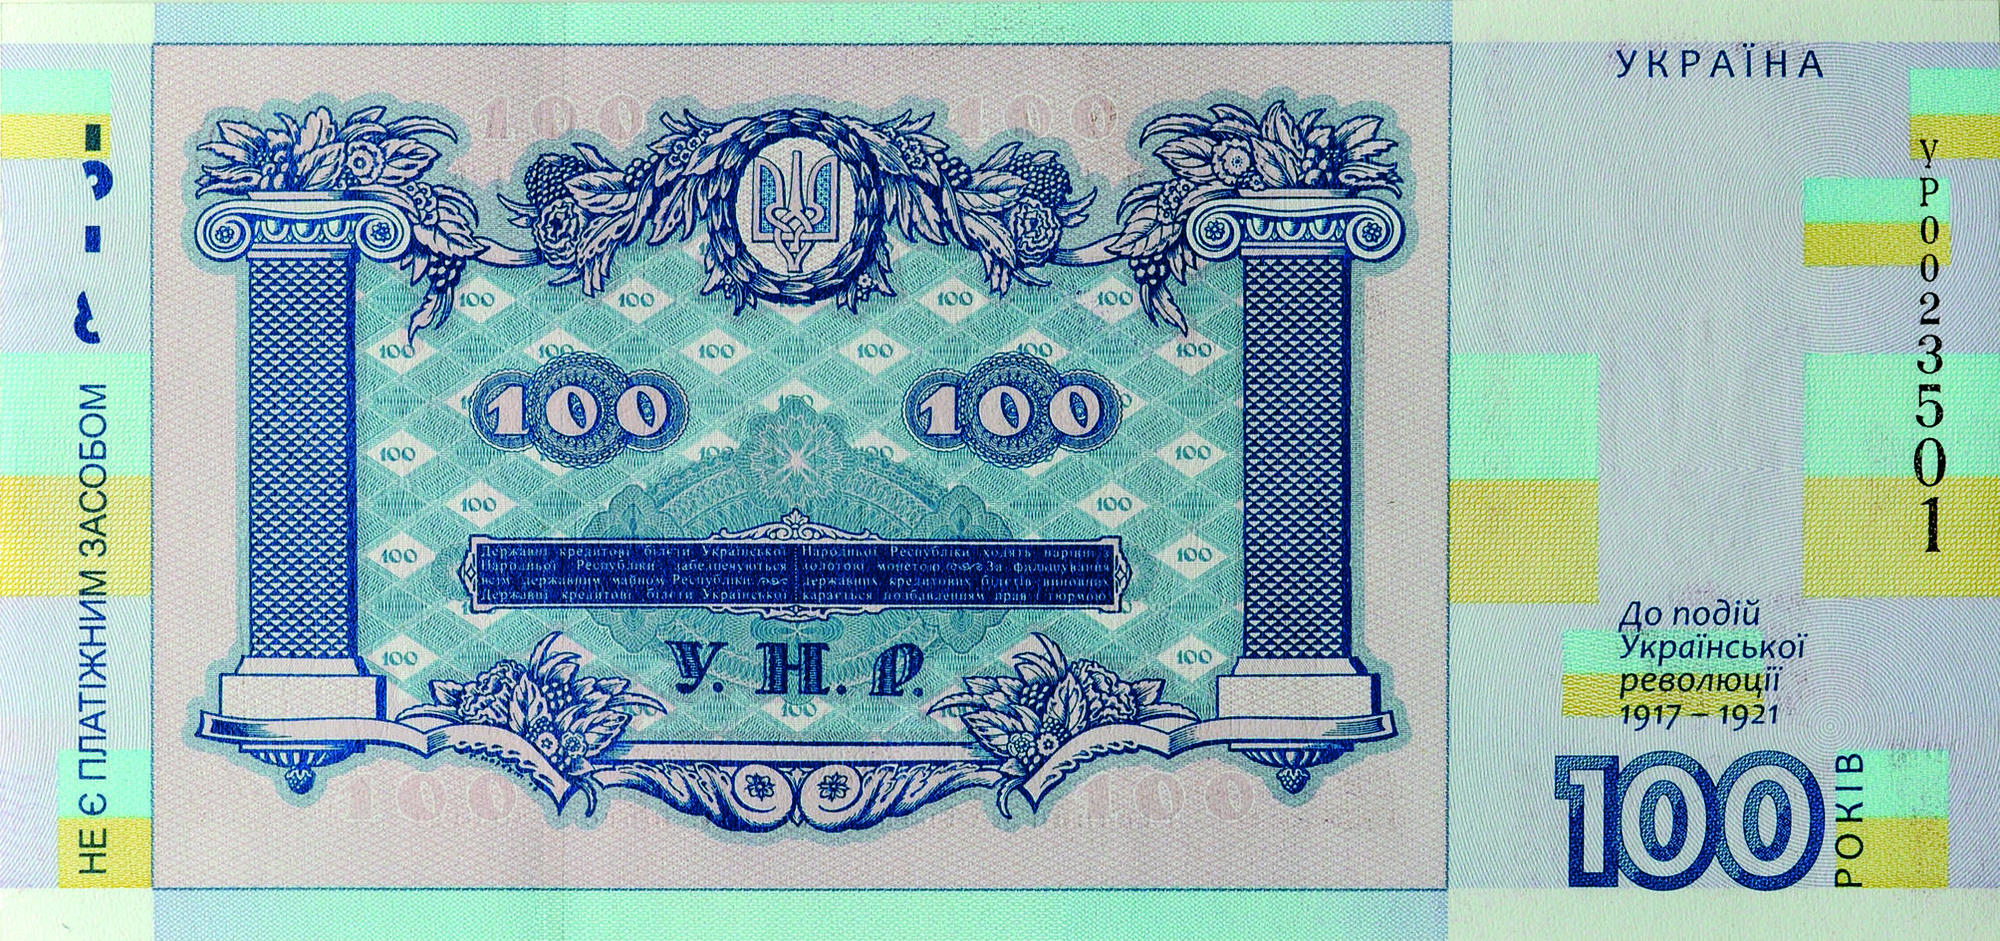 Сьогодні НБУ випускає нову банкноту, щоправда розрахуватися нею українці не зможуть 1